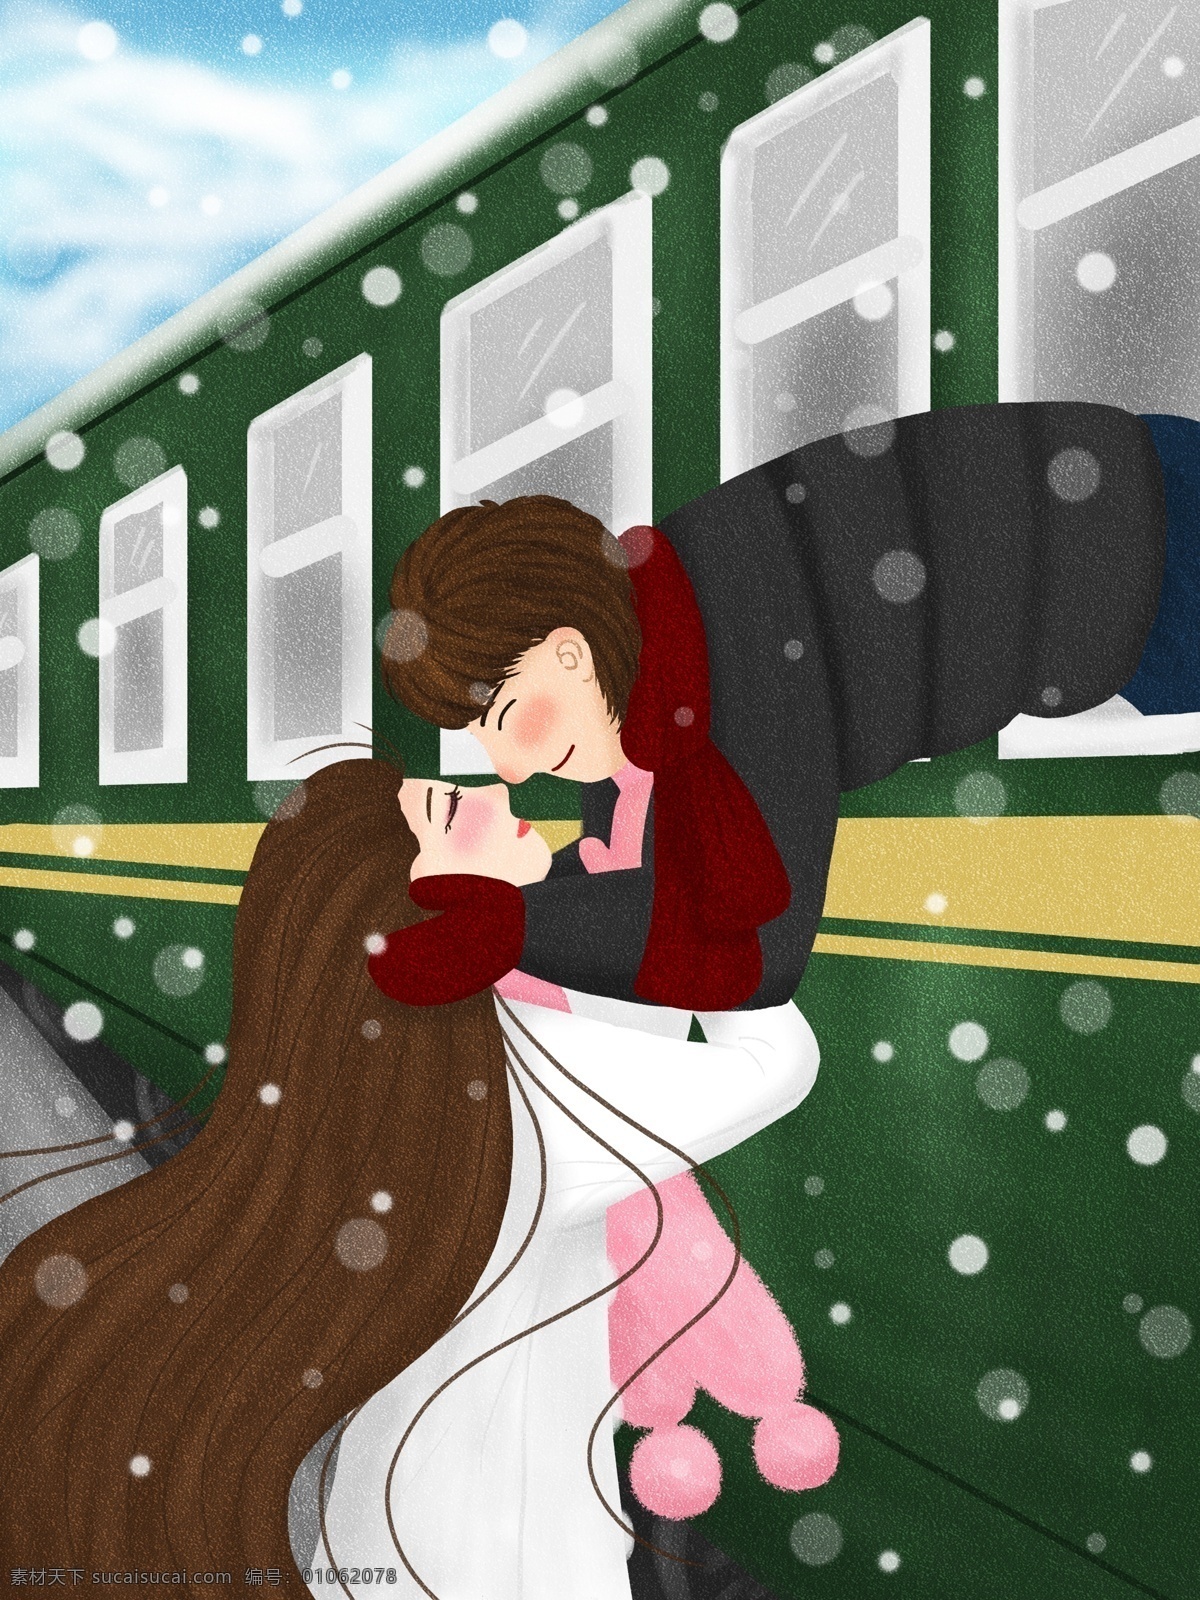 春运 回家 过年 情侣 车站 送别 插画 火车 下雪 离别 送行 欢送 火车站 情感 表达 拥抱 亲密 安慰